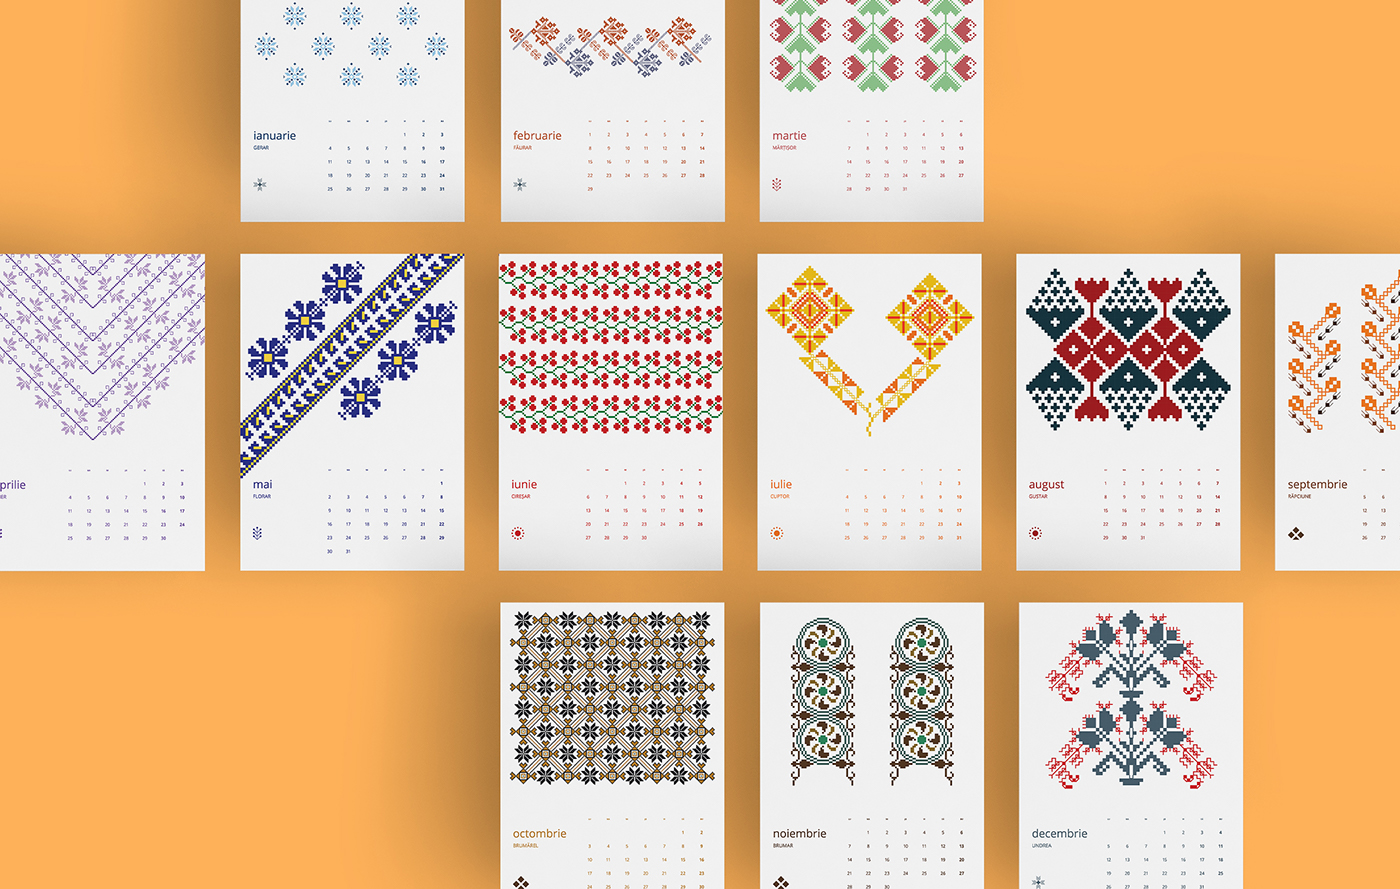 Adobe Portfolio romanian calendar 2016 traditional romania calendar motifs motive traditionale print design 